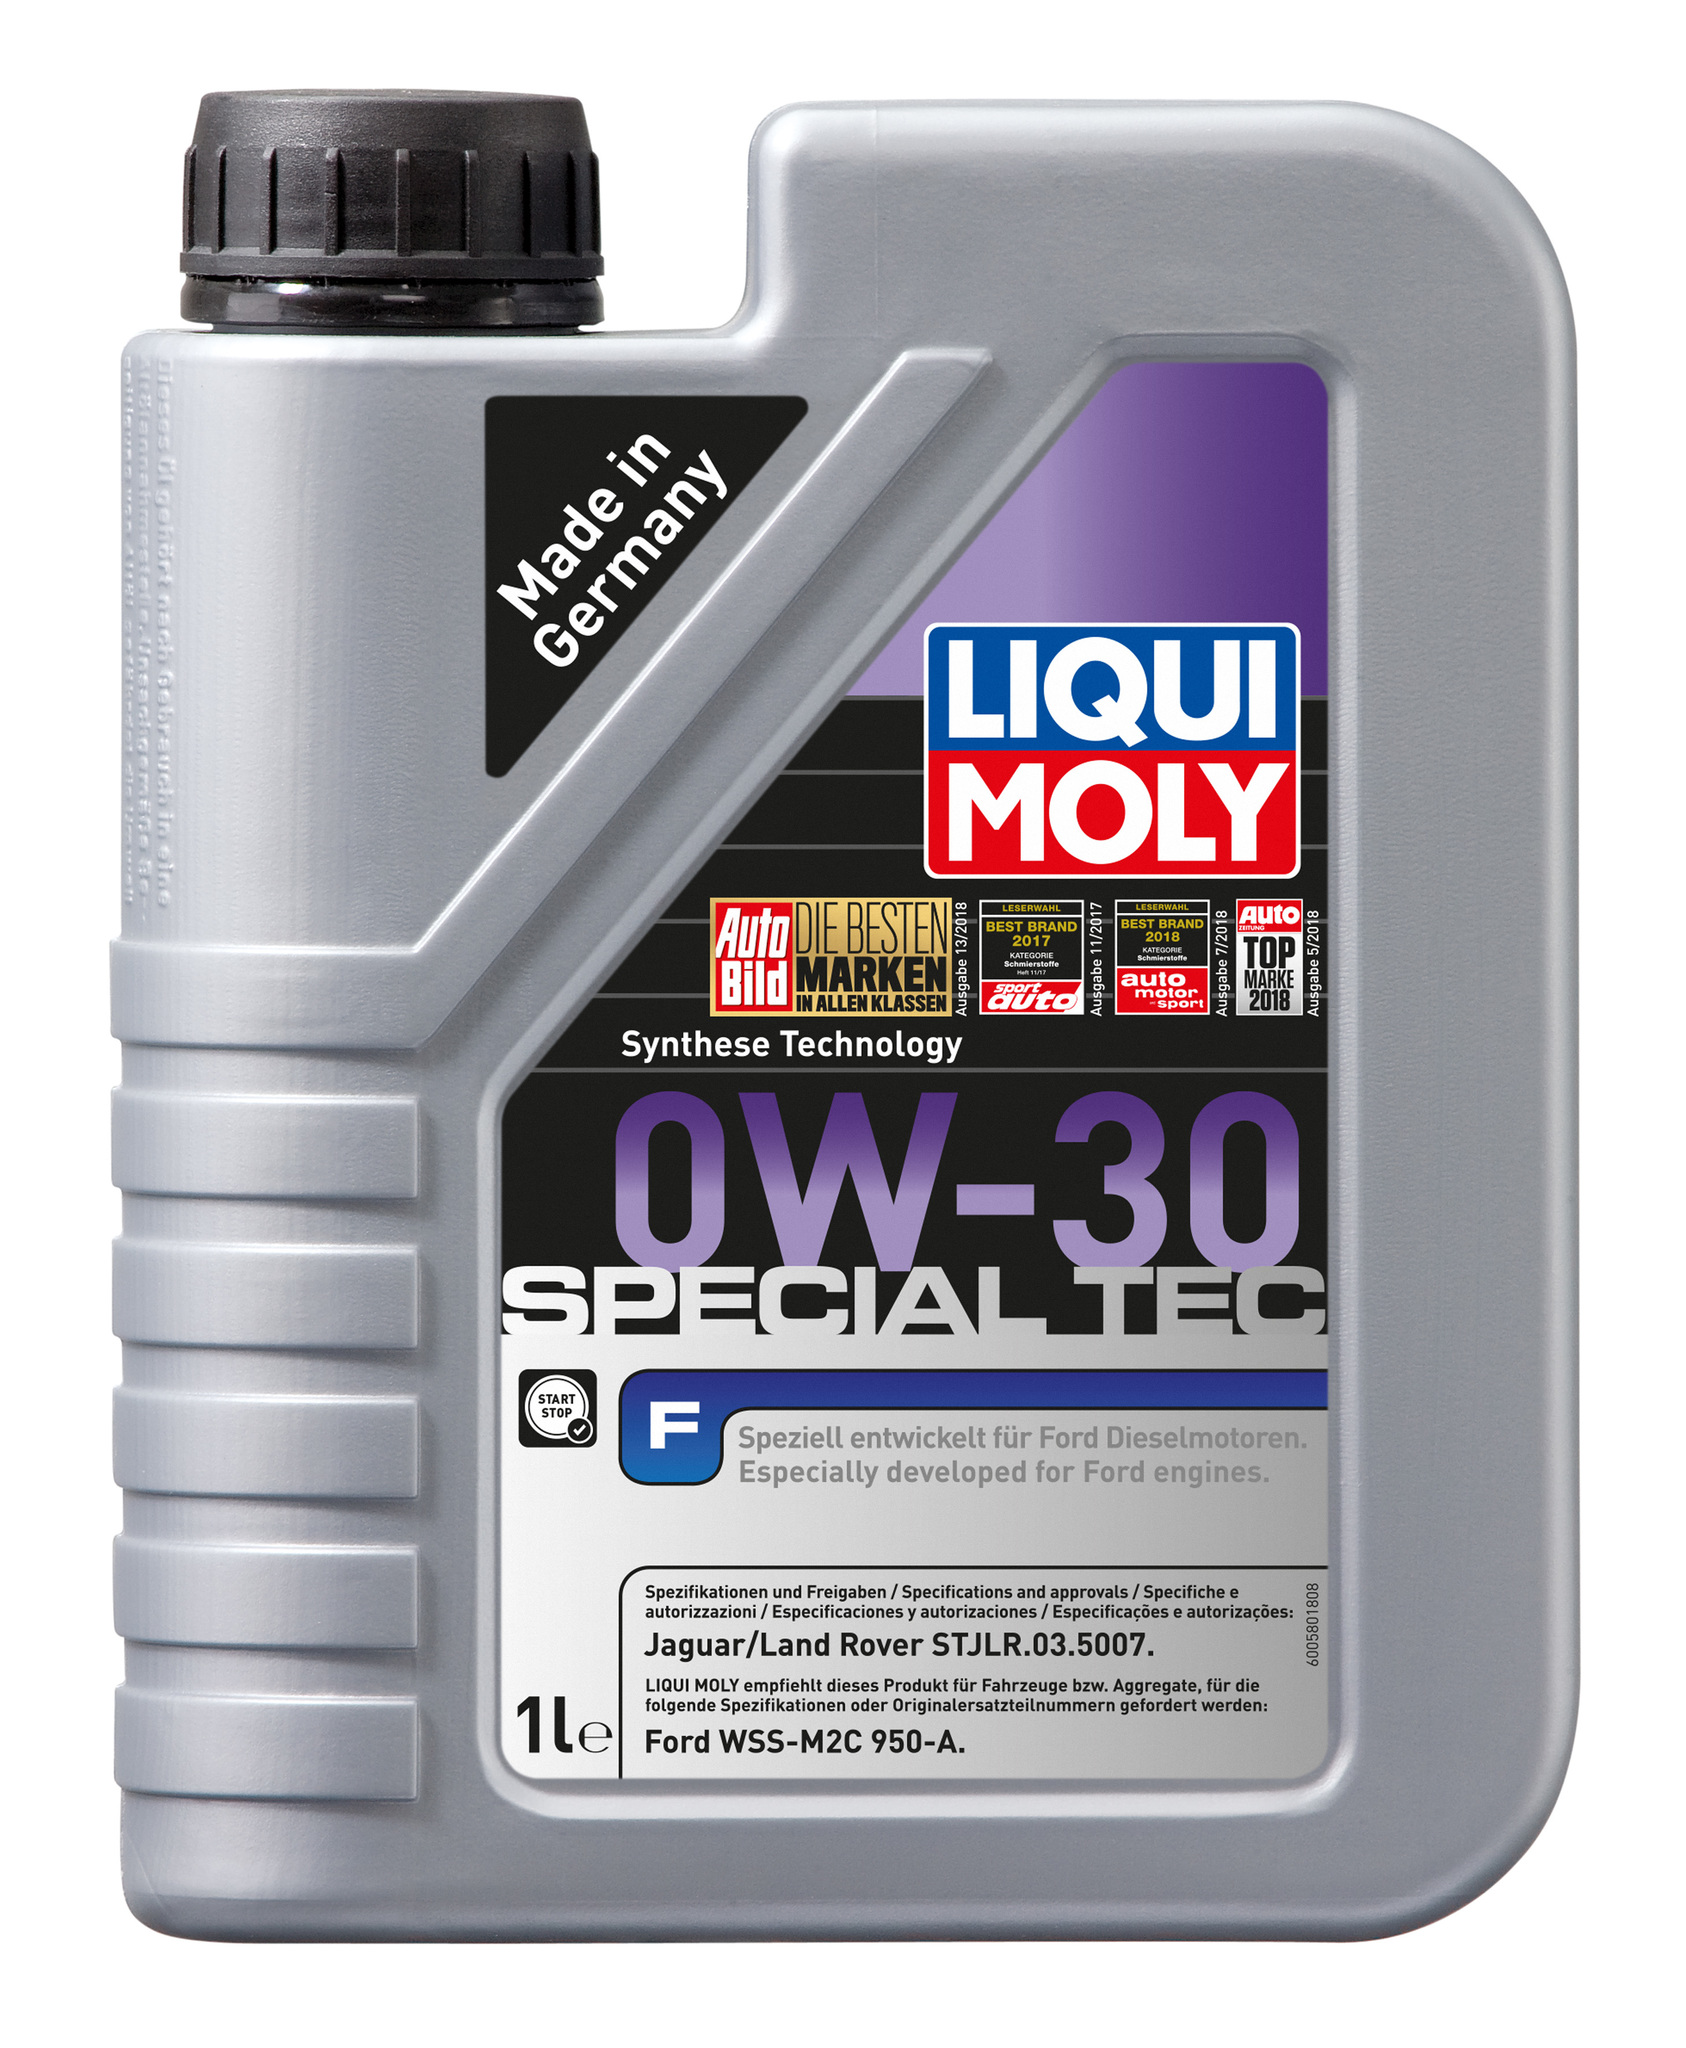 Liqui Moly Special Tec F 0W30 НС-синтетическое моторное масло